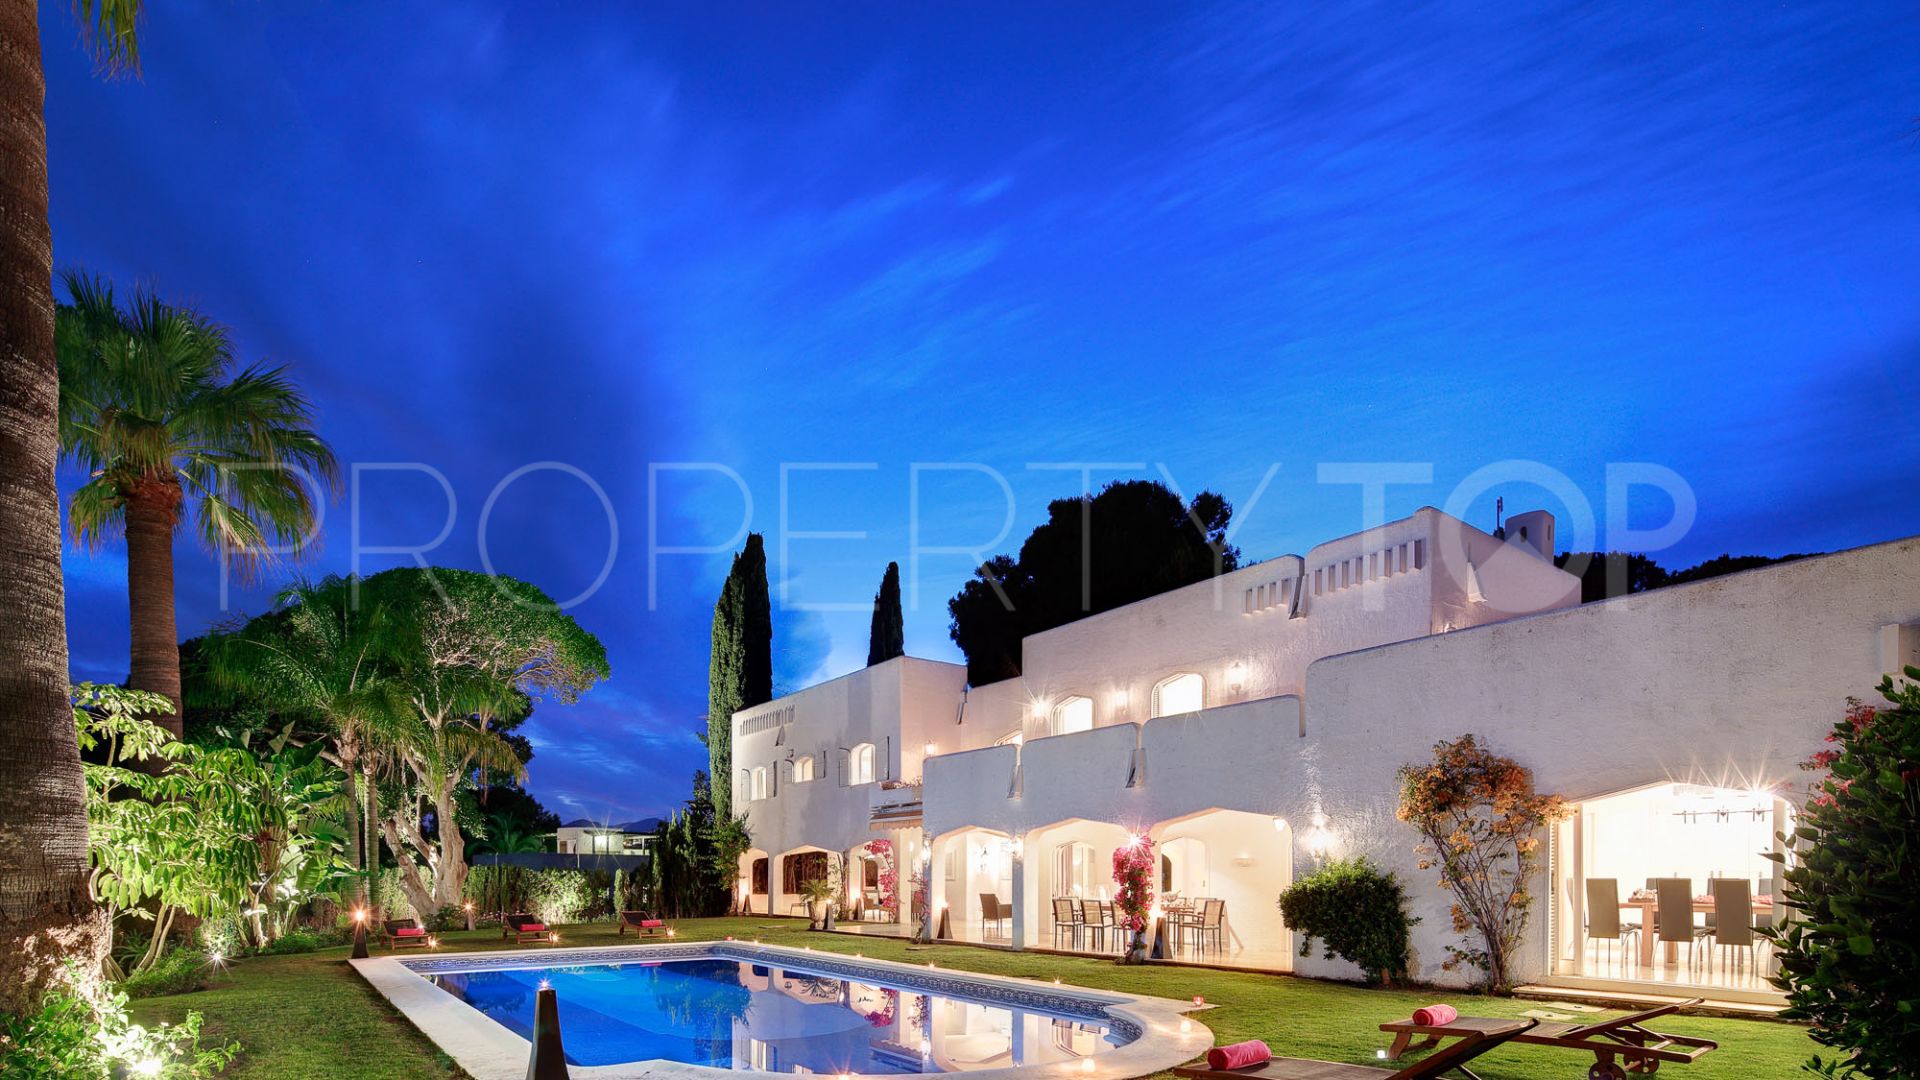 For sale Atalaya de Rio Verde villa with 7 bedrooms